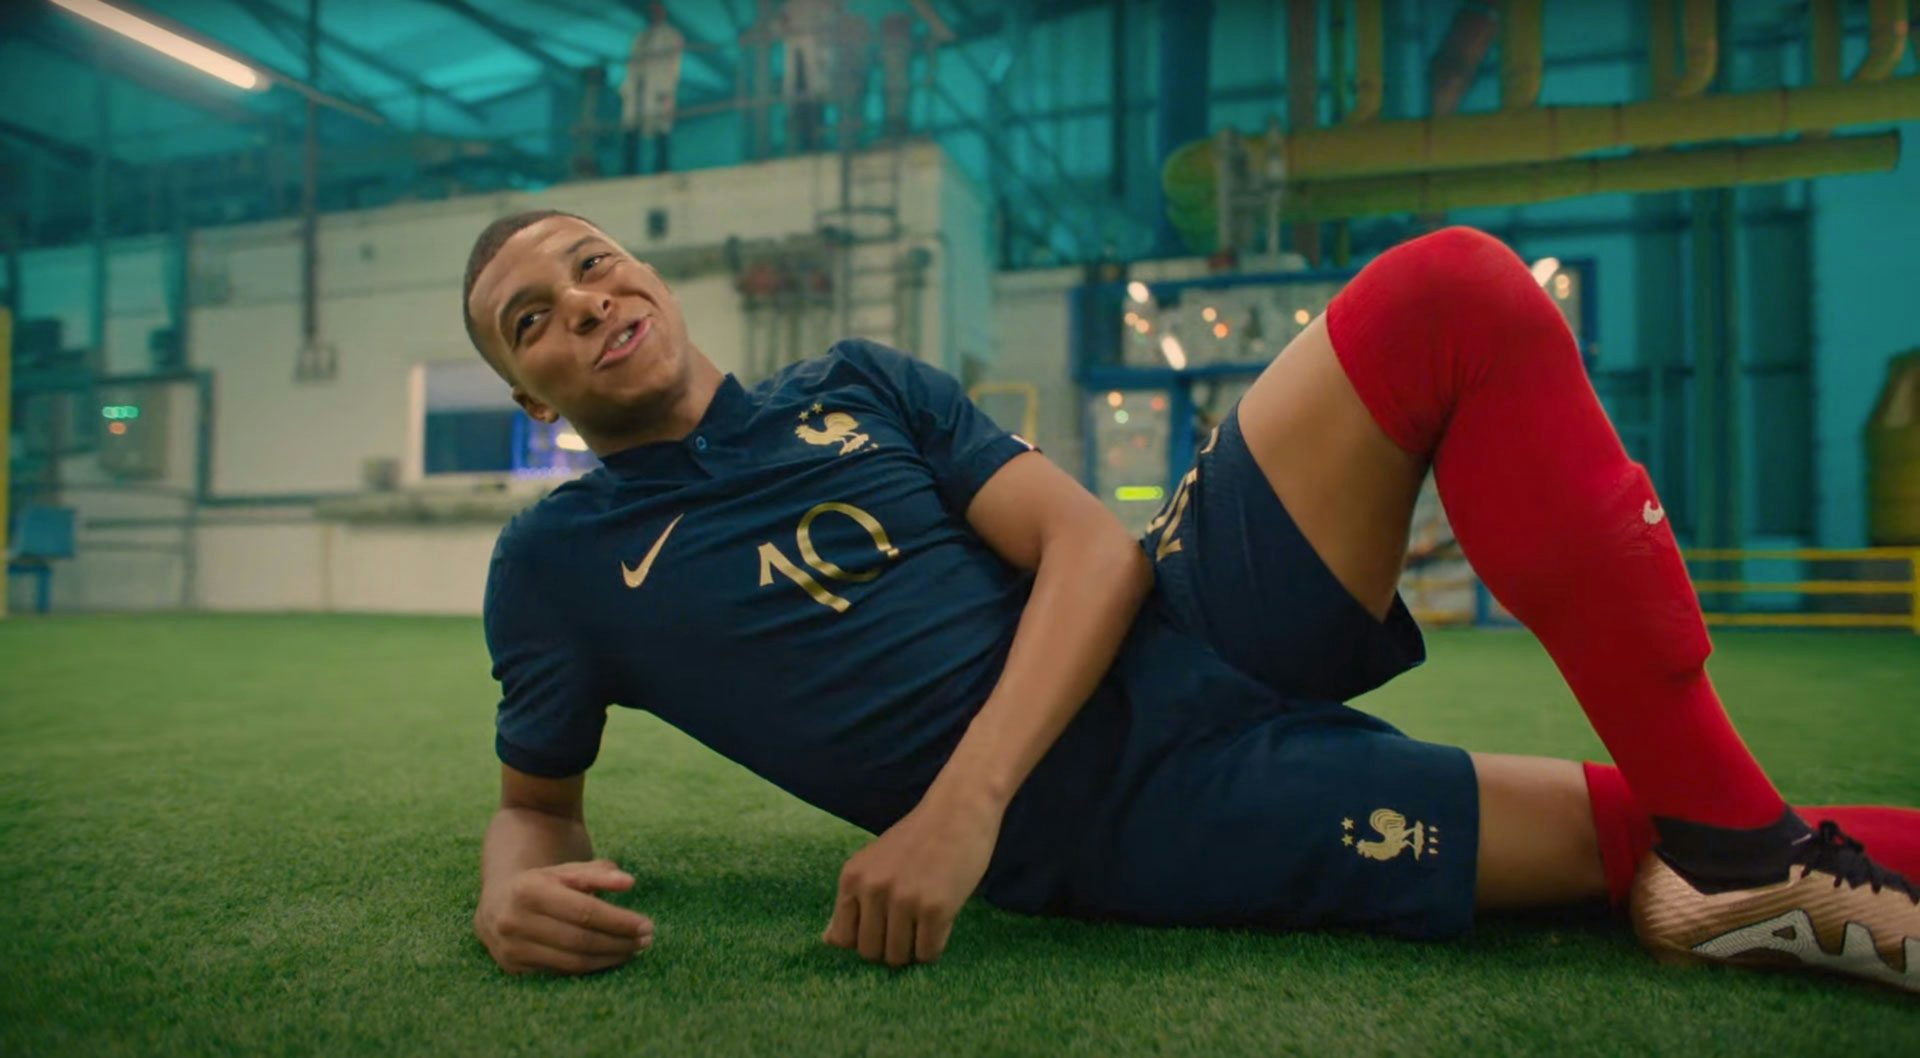 Eliminación felicidad Disfraz Nike enters the footballverse in its star-studded World Cup ad